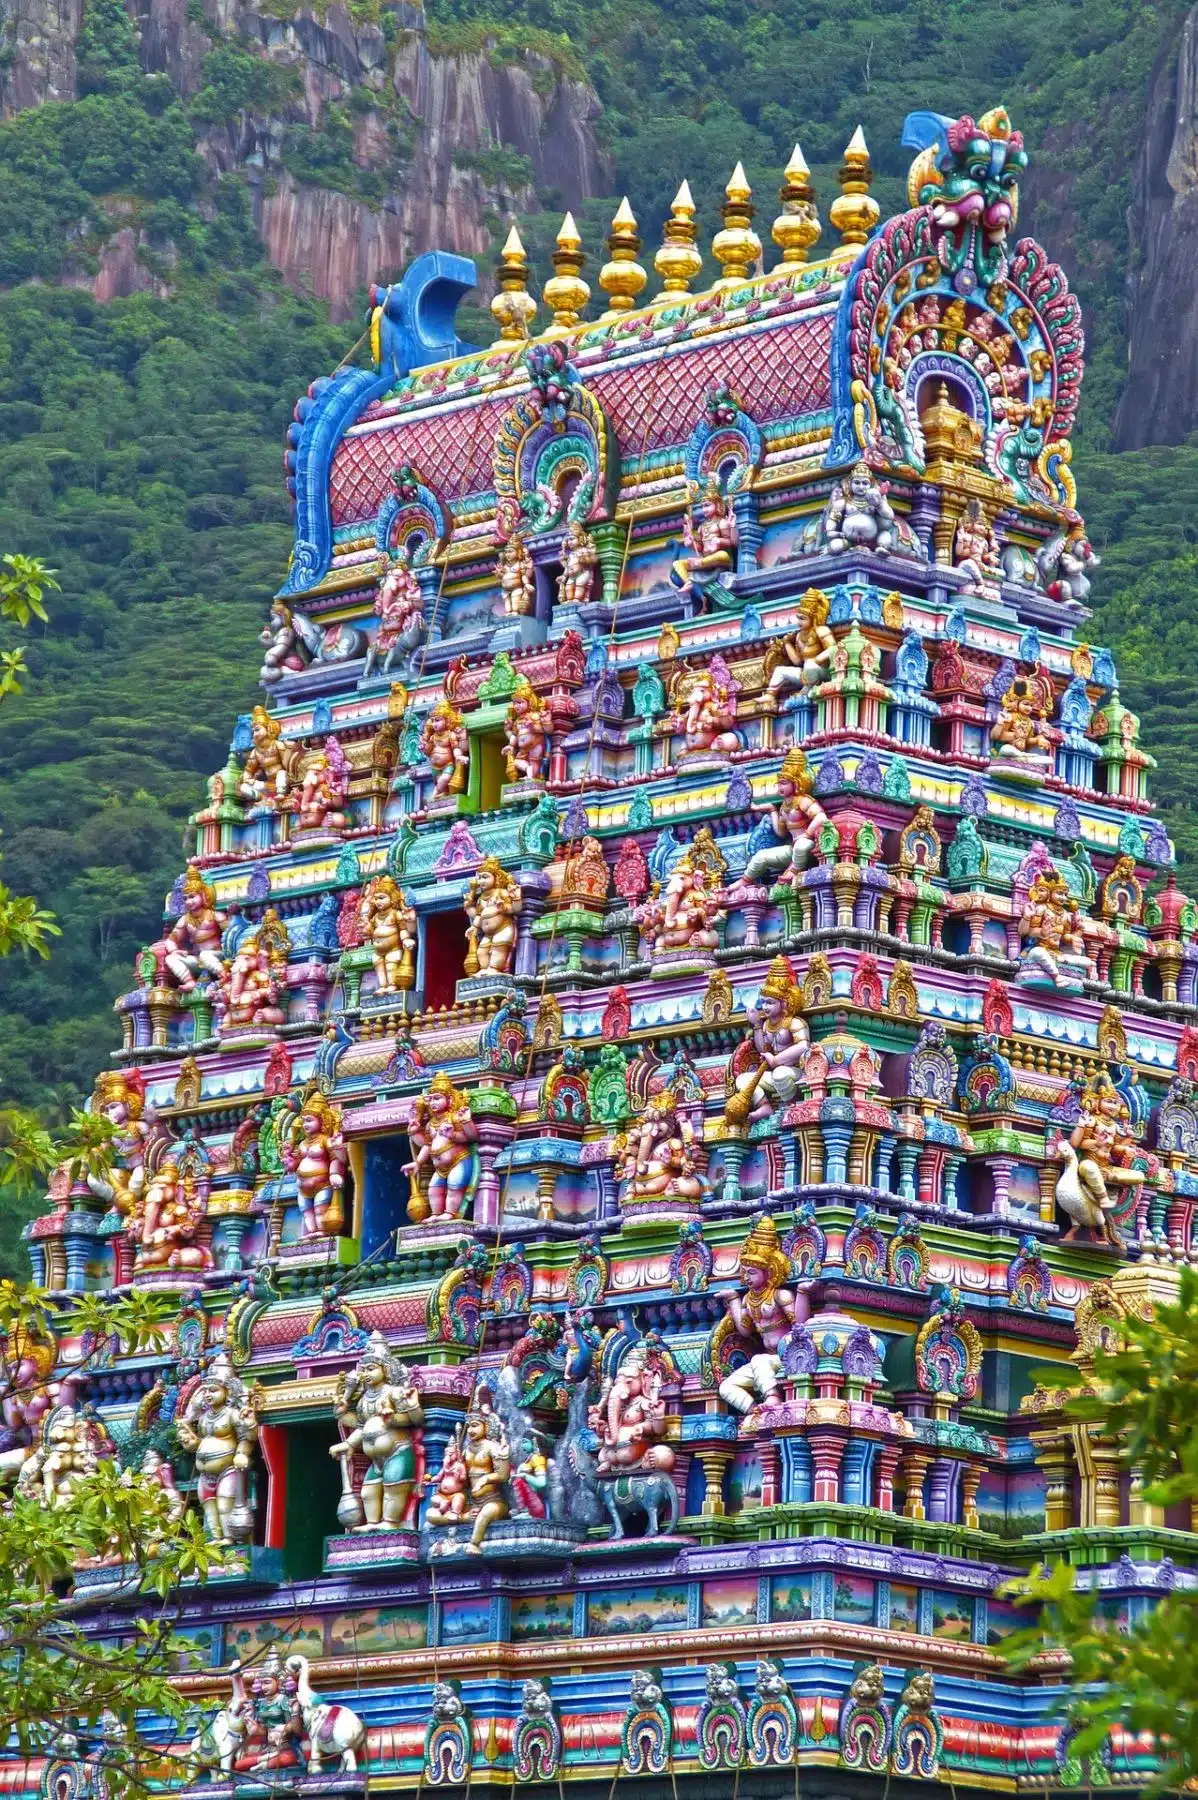 Lebendiger und kunstvoll verzierter Turm eines Hindutempels, geschmückt mit farbenfrohen Statuen und Skulpturen von Gottheiten, vor der Kulisse üppiger grüner Berge, der an die Ruhe eines Seg erinnert